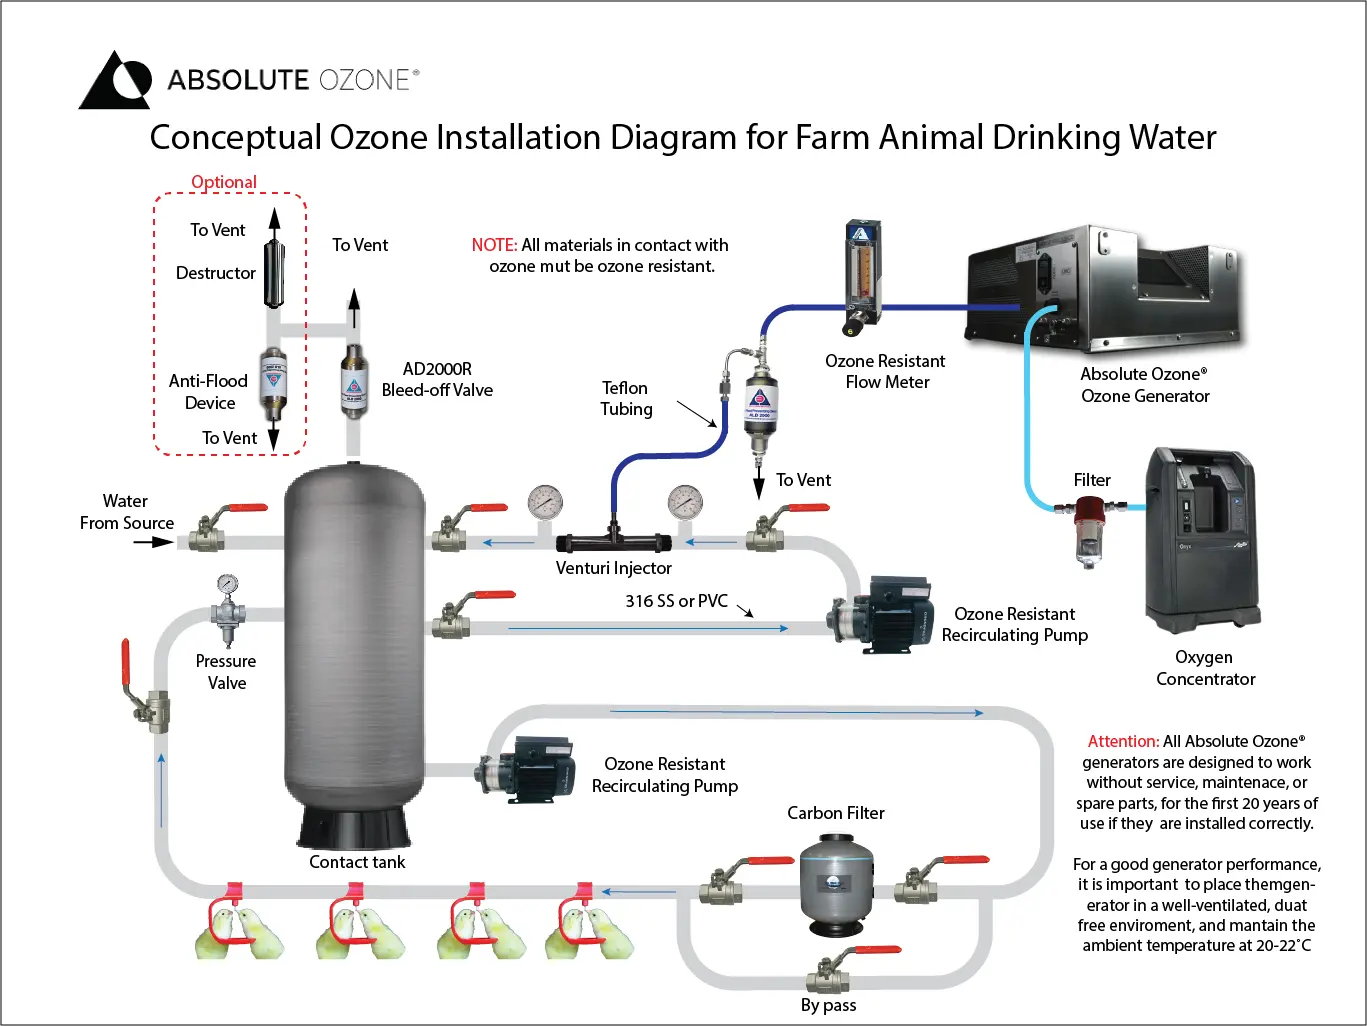 diagrama conceptual para la instalación de ozono para agua para animales